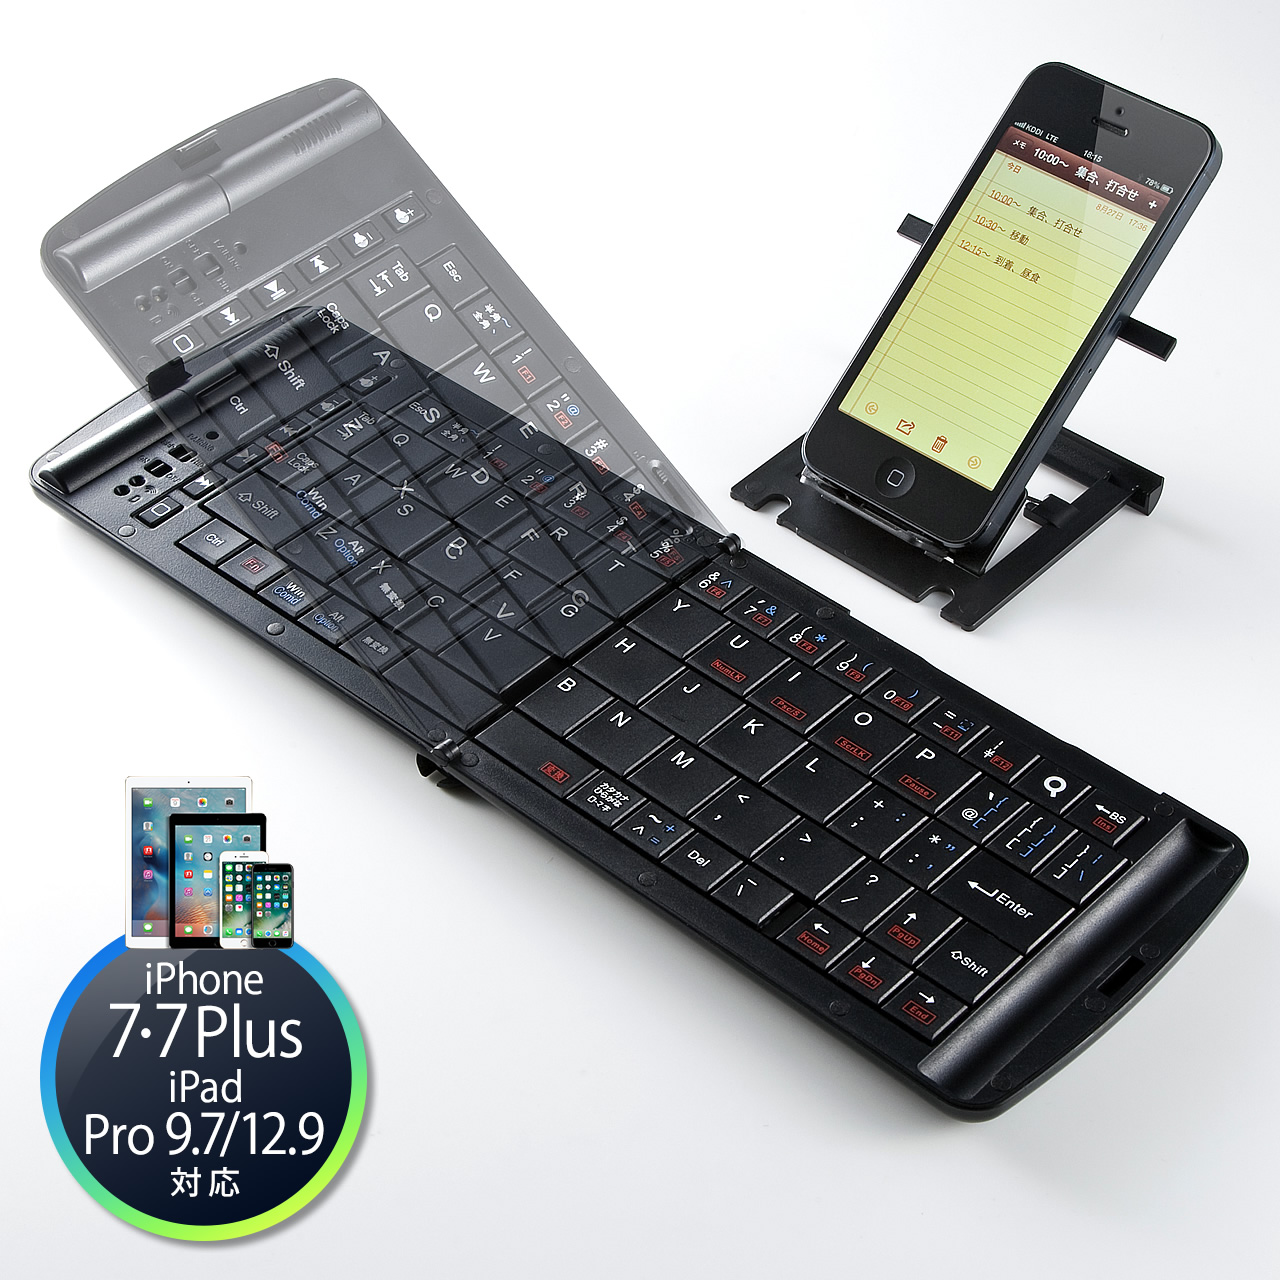 Bluetoothキーボード 折りたたみ 小型 パンタグラフ Iphone Ipad対応 400 Skb042の通信販売 サンワサプライ直営 通販ならサンワダイレクト